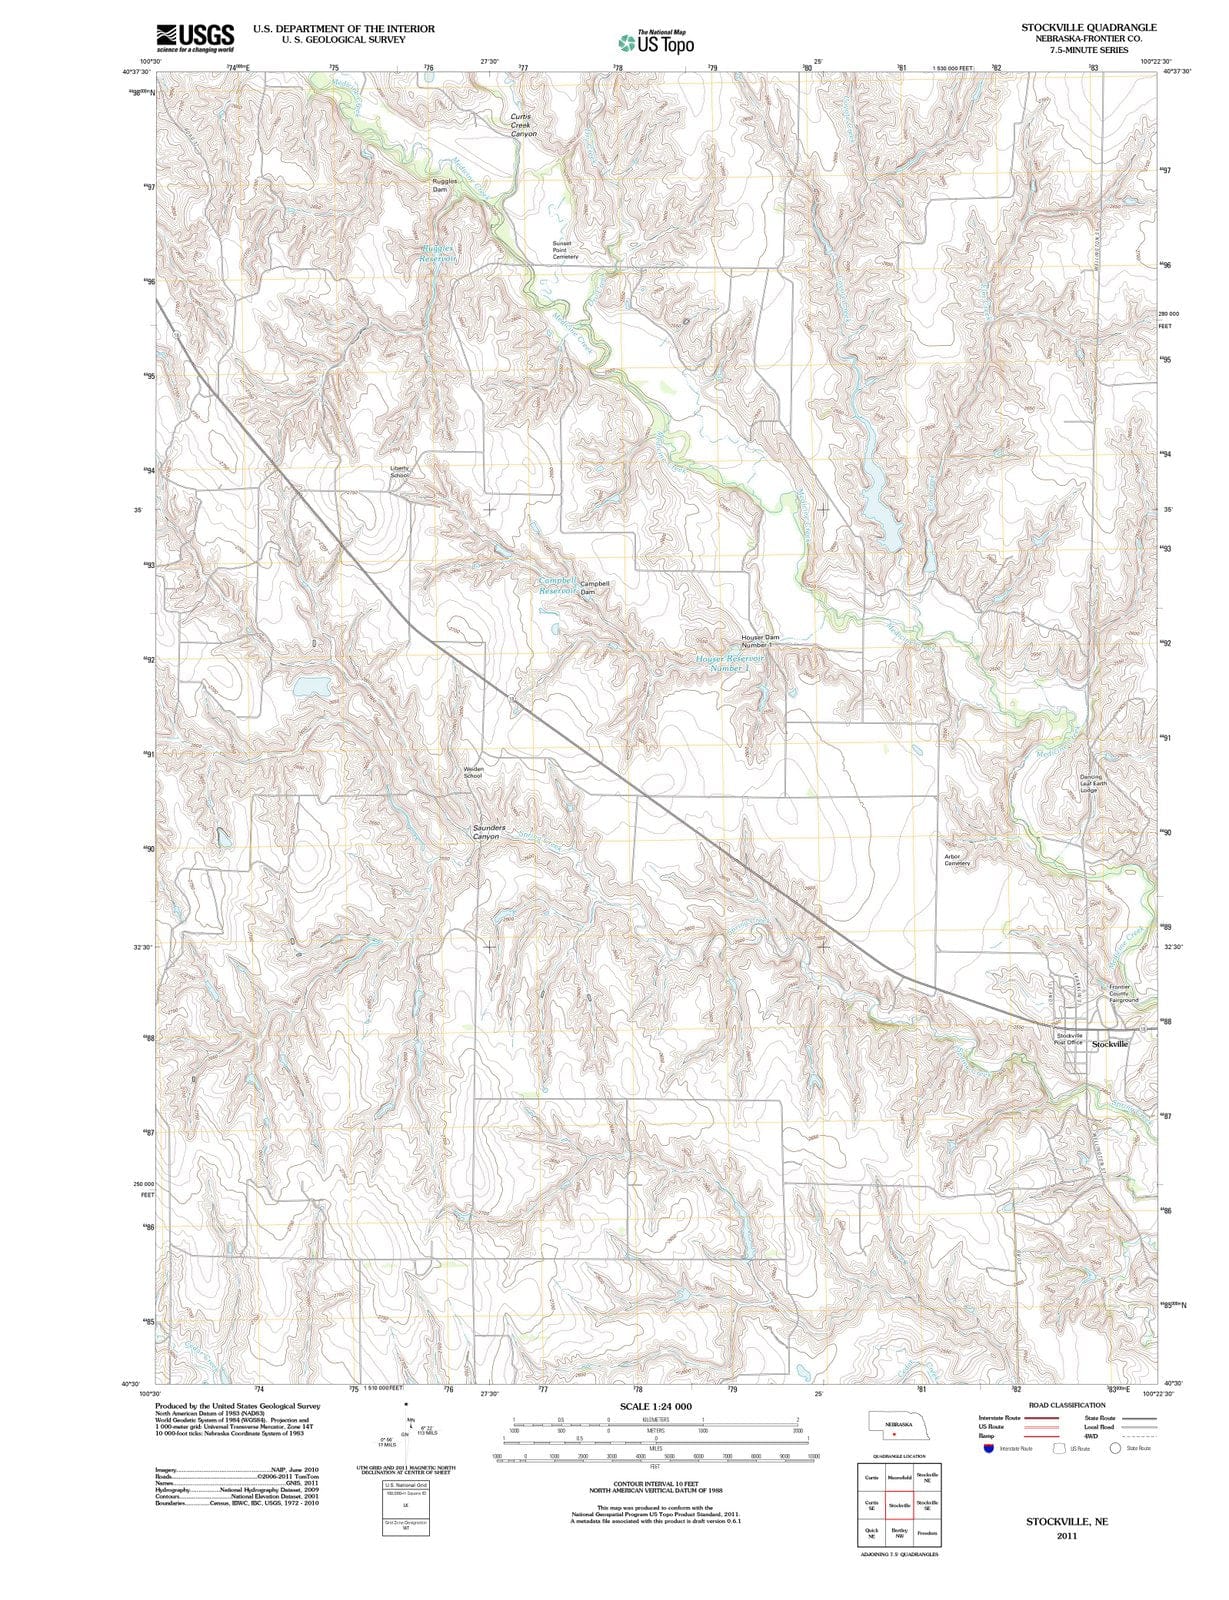 2011 Stockville, NE - Nebraska - USGS Topographic Map